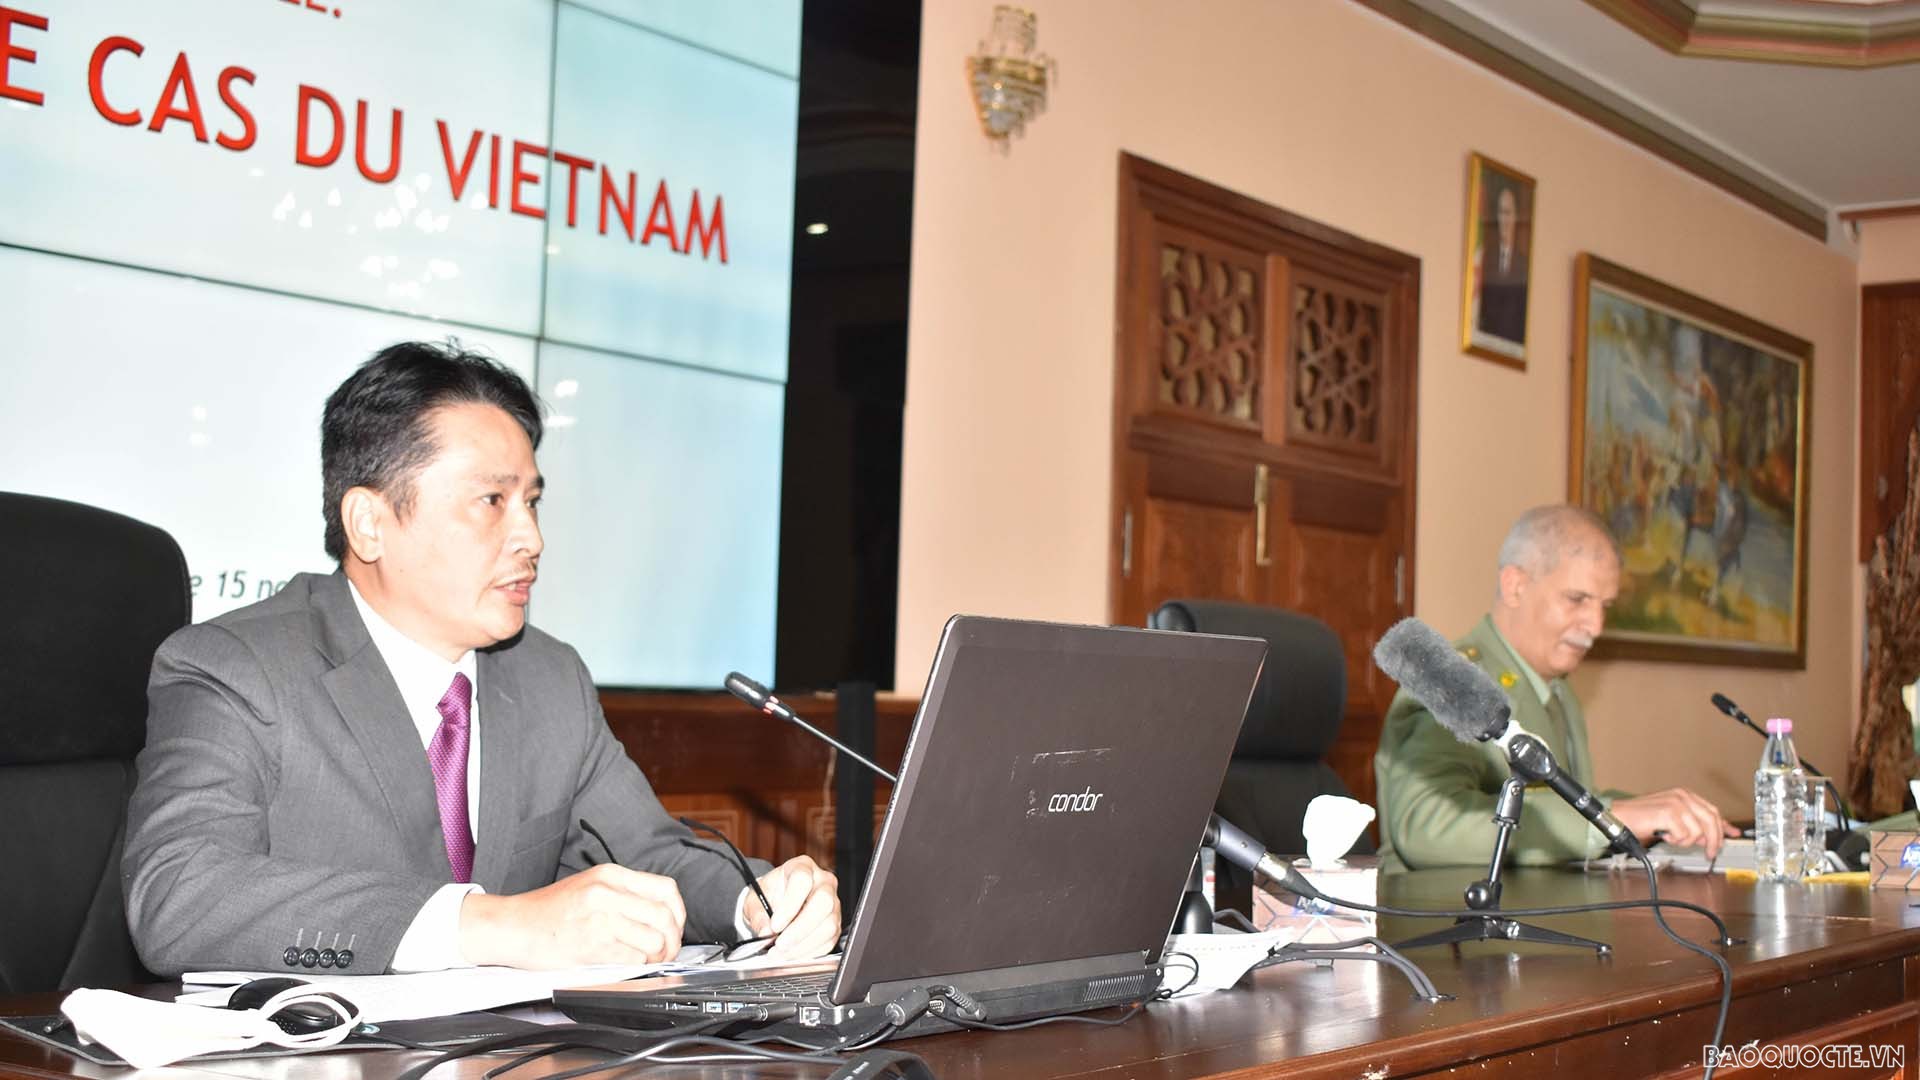 Đại sứ Việt Nam tại Algeria chủ trì tọa đàm về phát triển bền vững tại Đại học chiến tranh Algeria.